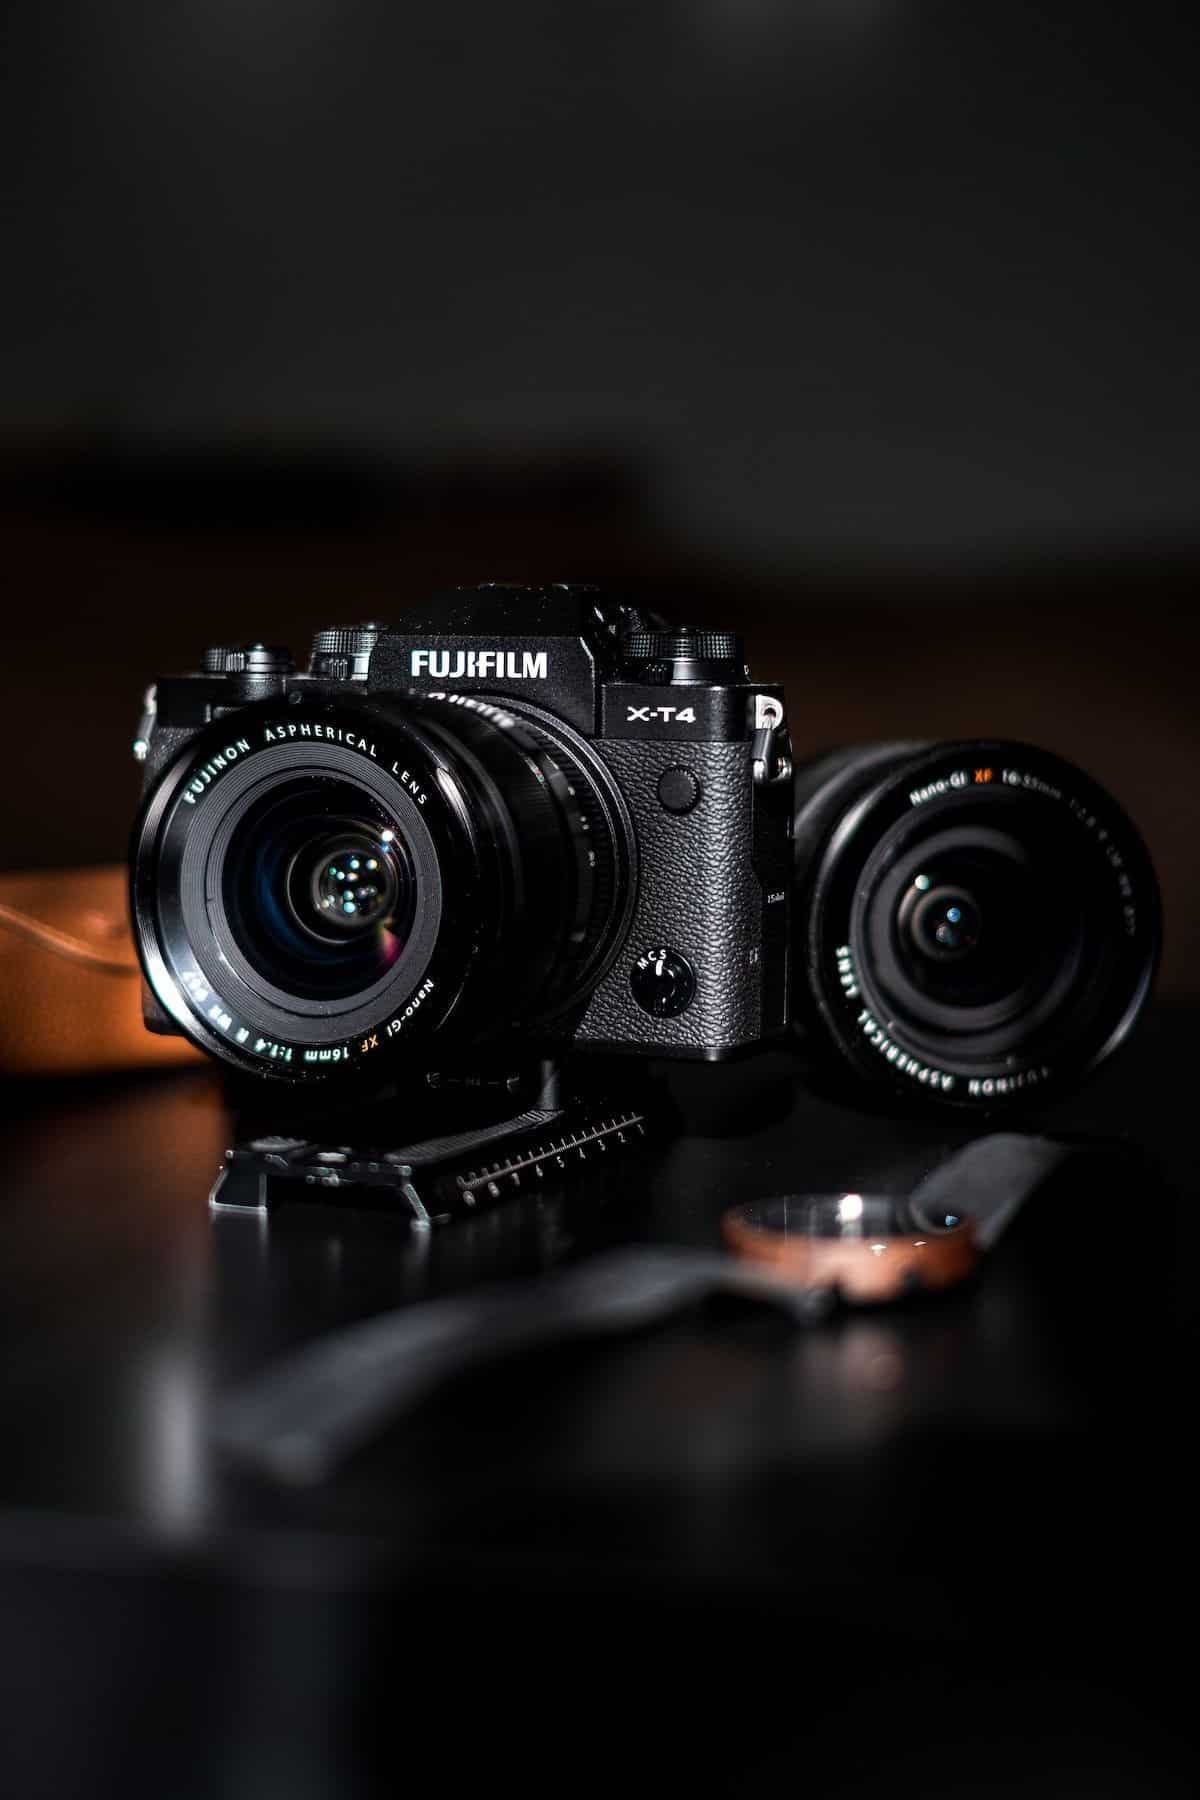 Khuyến mãi tháng 10 cùng Fujifilm, giảm giá máy ảnh Fujifilm X-T4 cùng ống kính hấp dẫn không thể bỏ lỡ